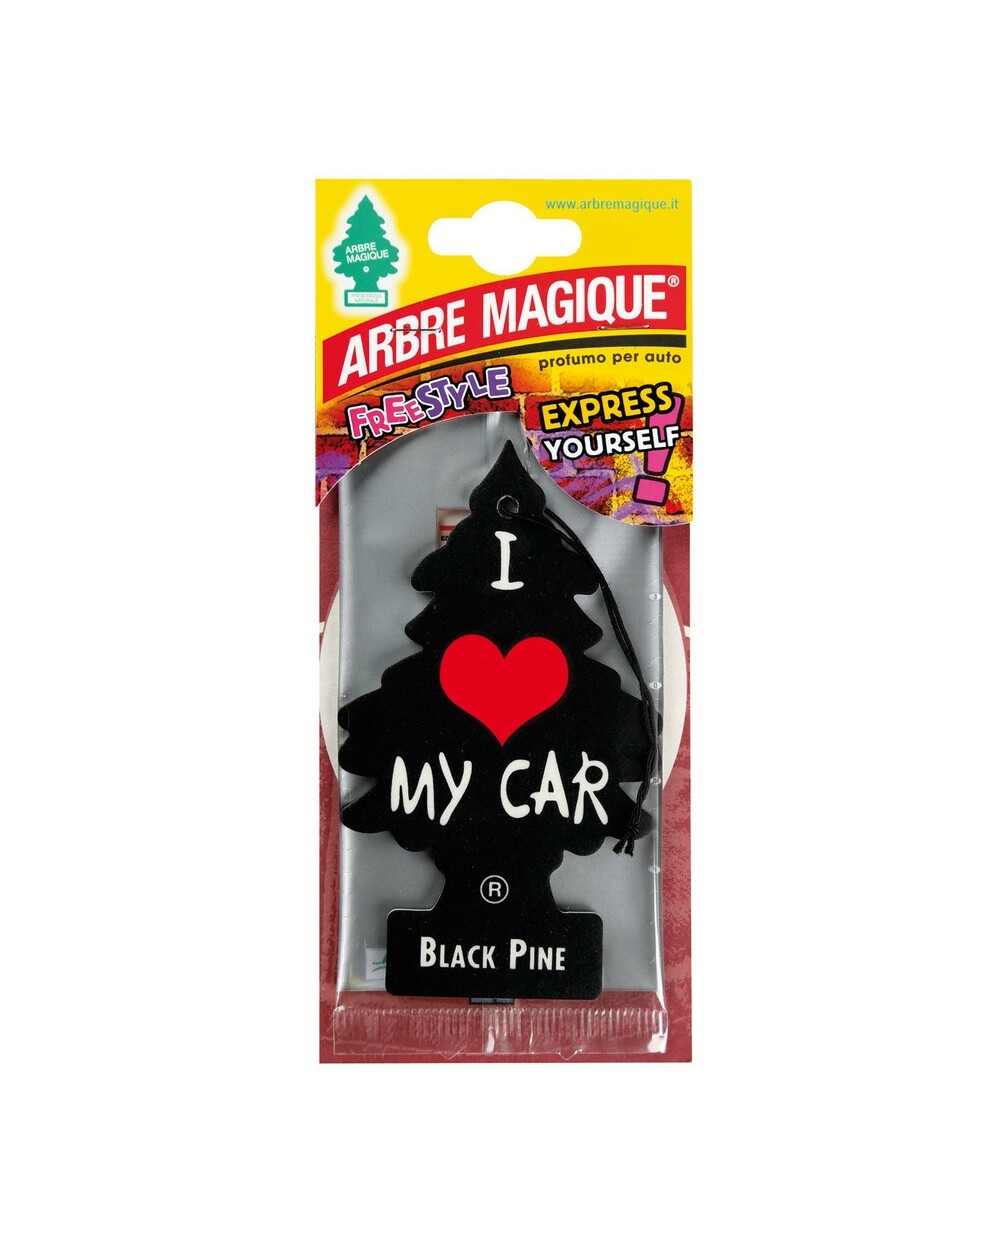 Arbre Magique - Bubble Gum